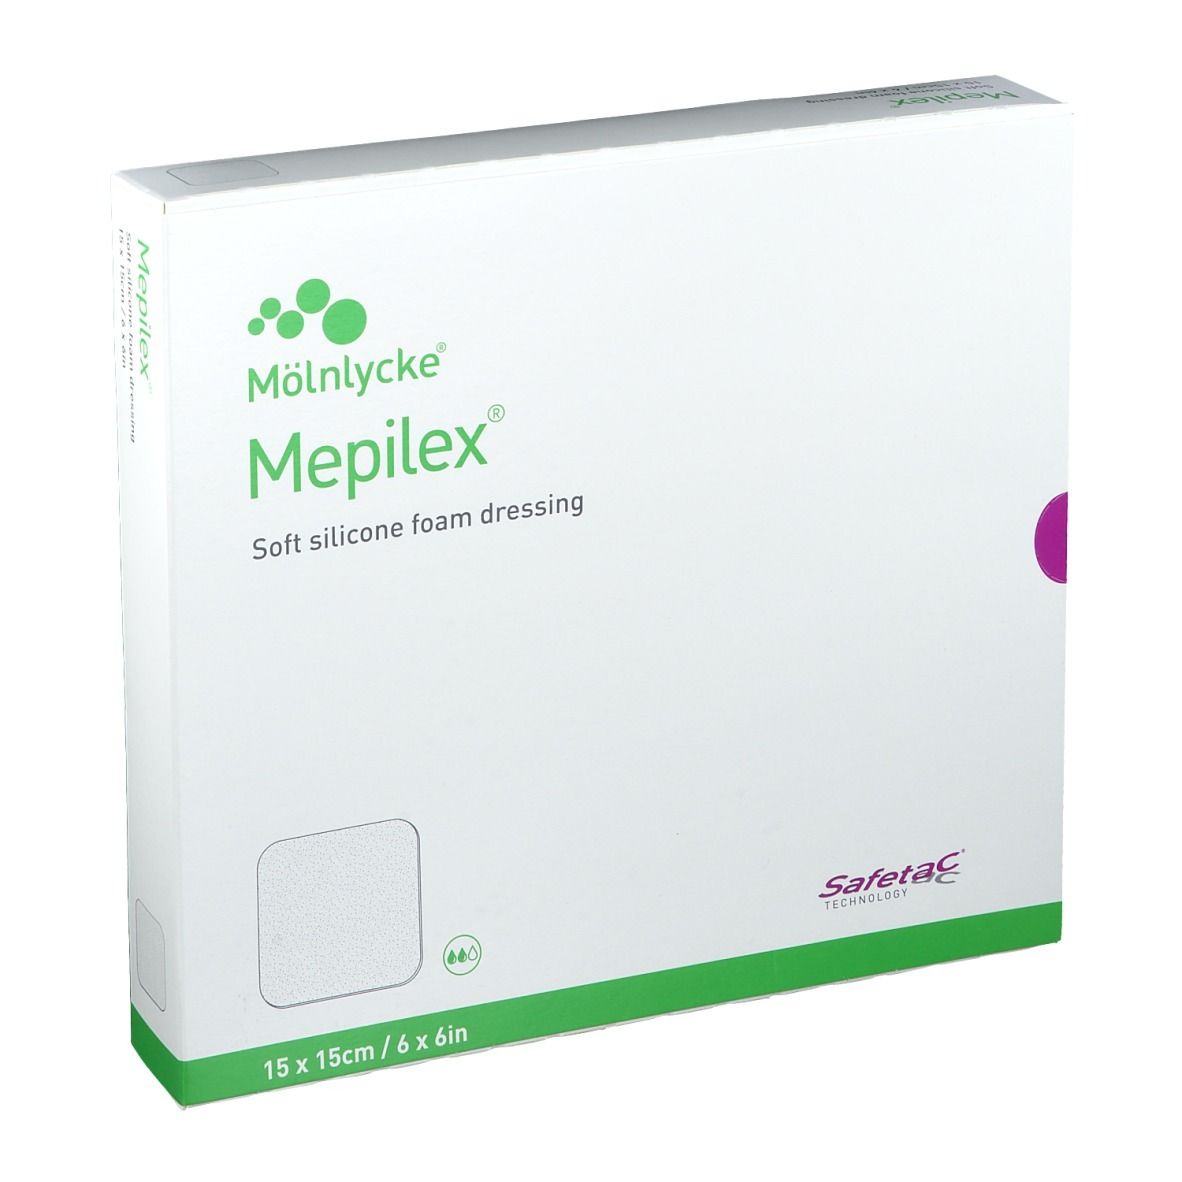 Image of Mepilex 15cm x 15cm